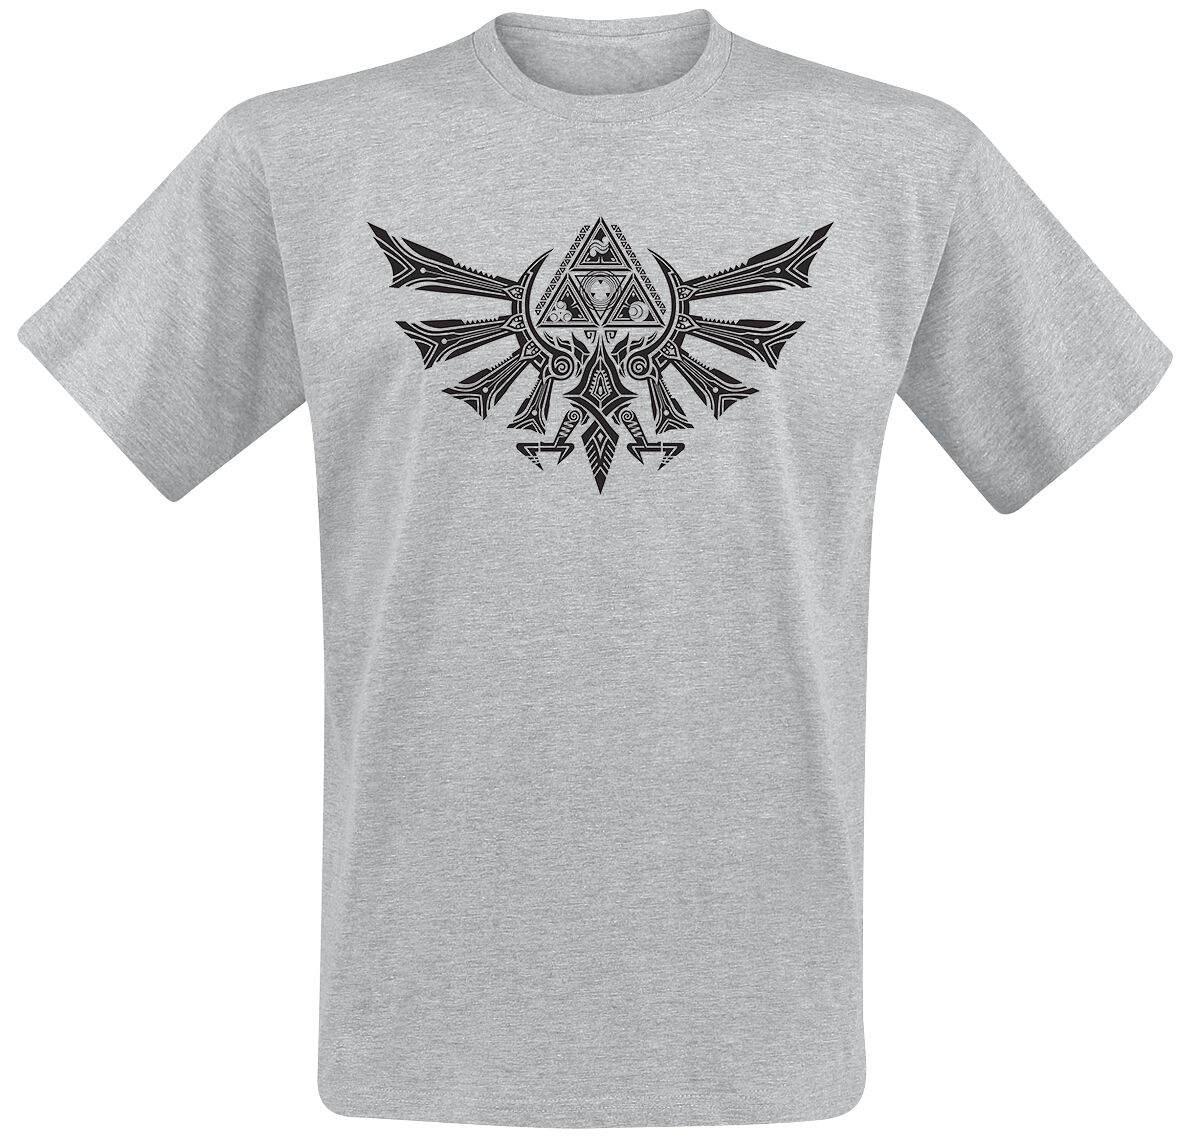 The Legend Of Zelda - Gaming T-Shirt - Hyrule Tribal - S bis XXL - für Männer - Größe XL - grau meliert